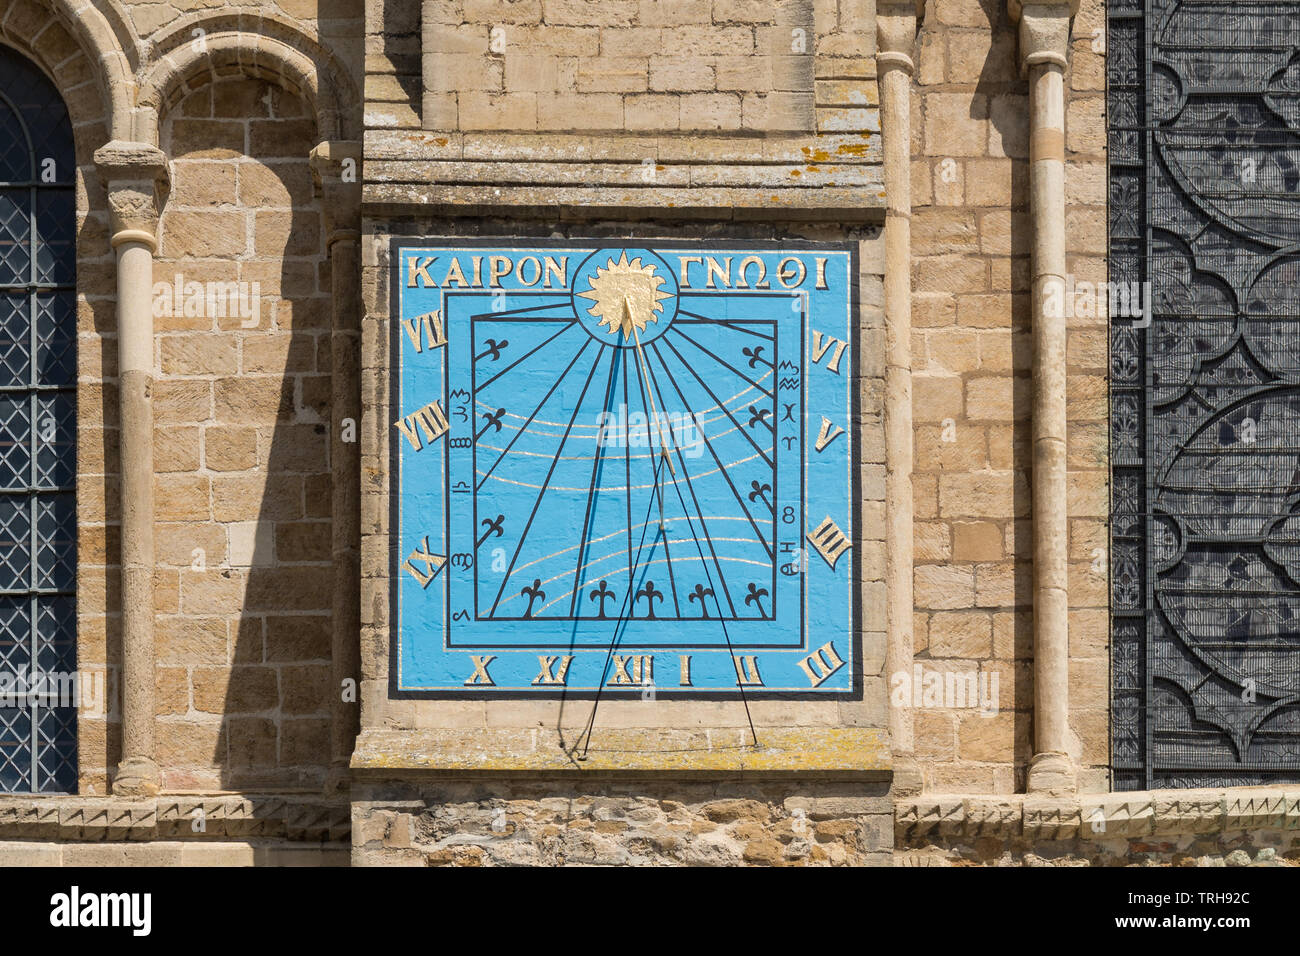 Die senkrechte Wand Sonnenuhr an der Kathedrale von Ely mit griechischen Worte des Pittacus sagt 'Zeit' oder 'eine Chance', England erkennen, Großbritannien Stockfoto